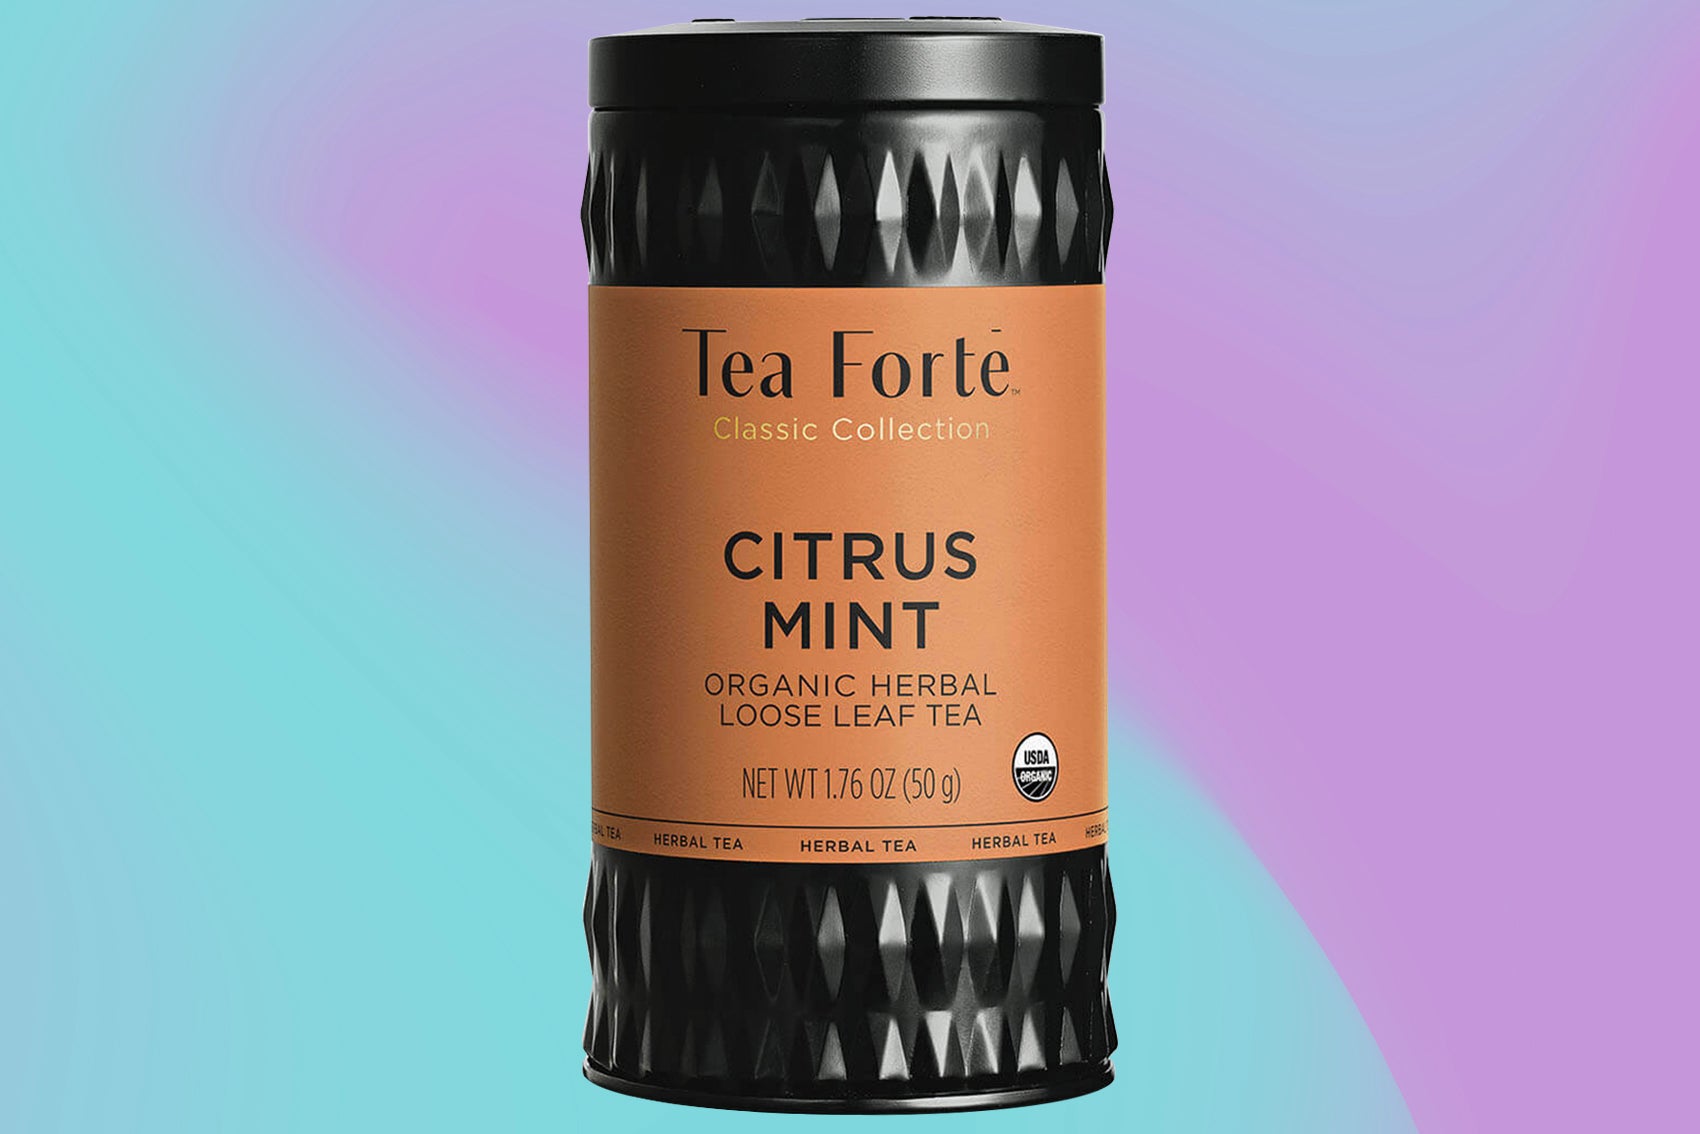 Tea Forte citrus mint